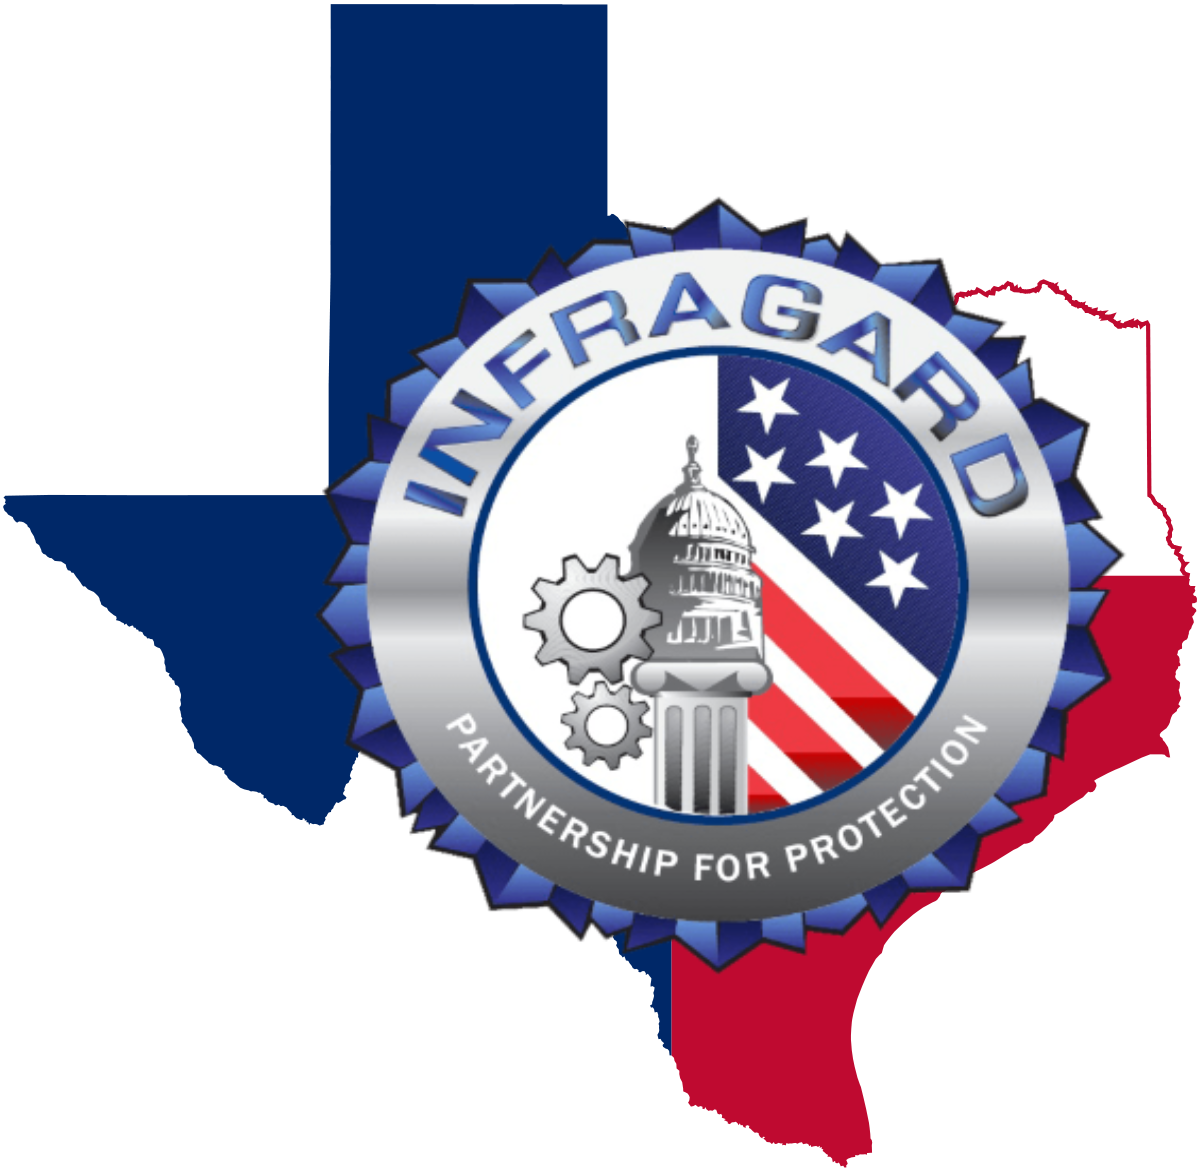 Capital of Texas InfraGard